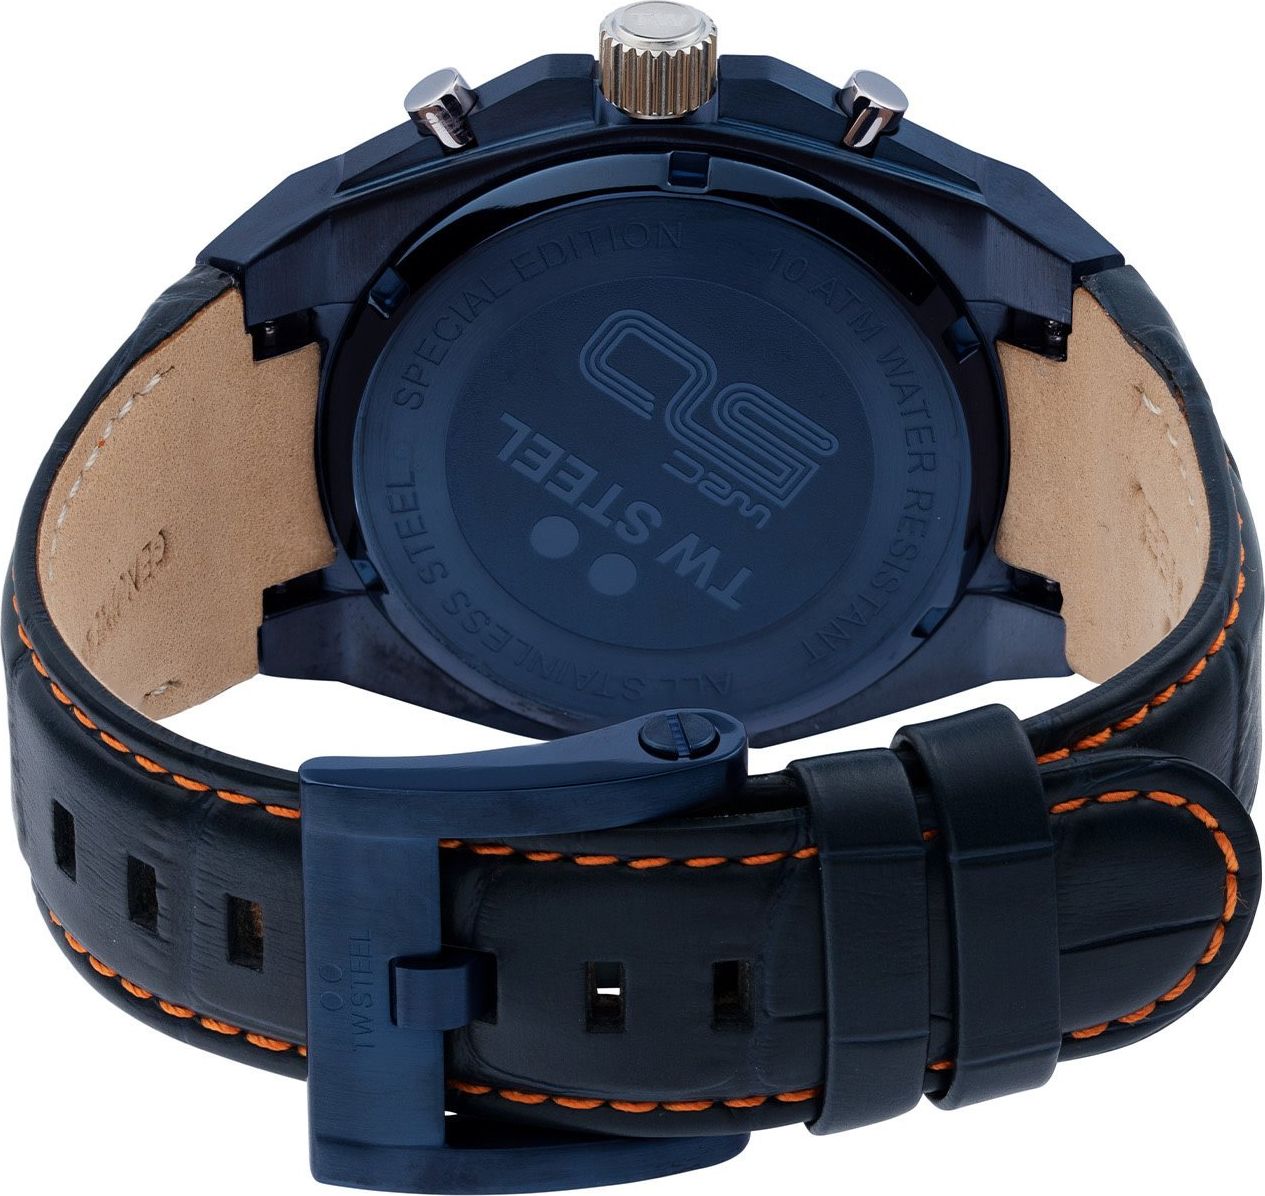 TW Steel TW Steel Horloge Heren CE4110 Staal Chronograaf 44mm Blauwe Plated met Zwart Plated Bezel Divers